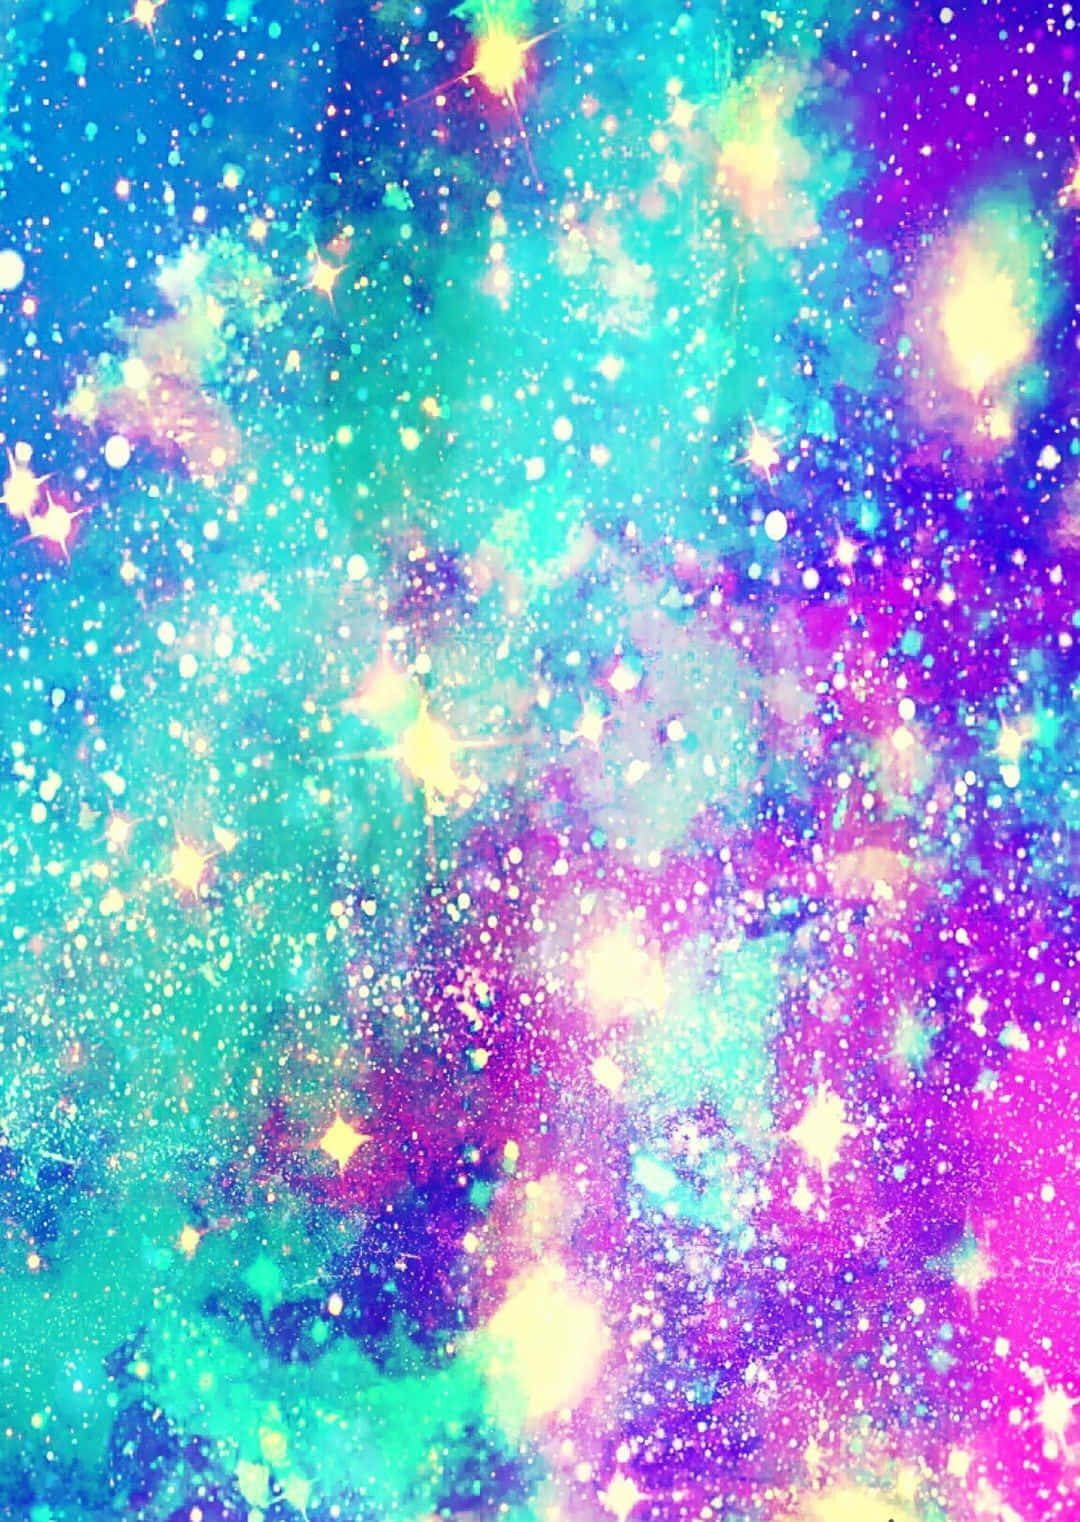 Free Galaxy Glitter Wallpaper - Download in JPG | Template.net